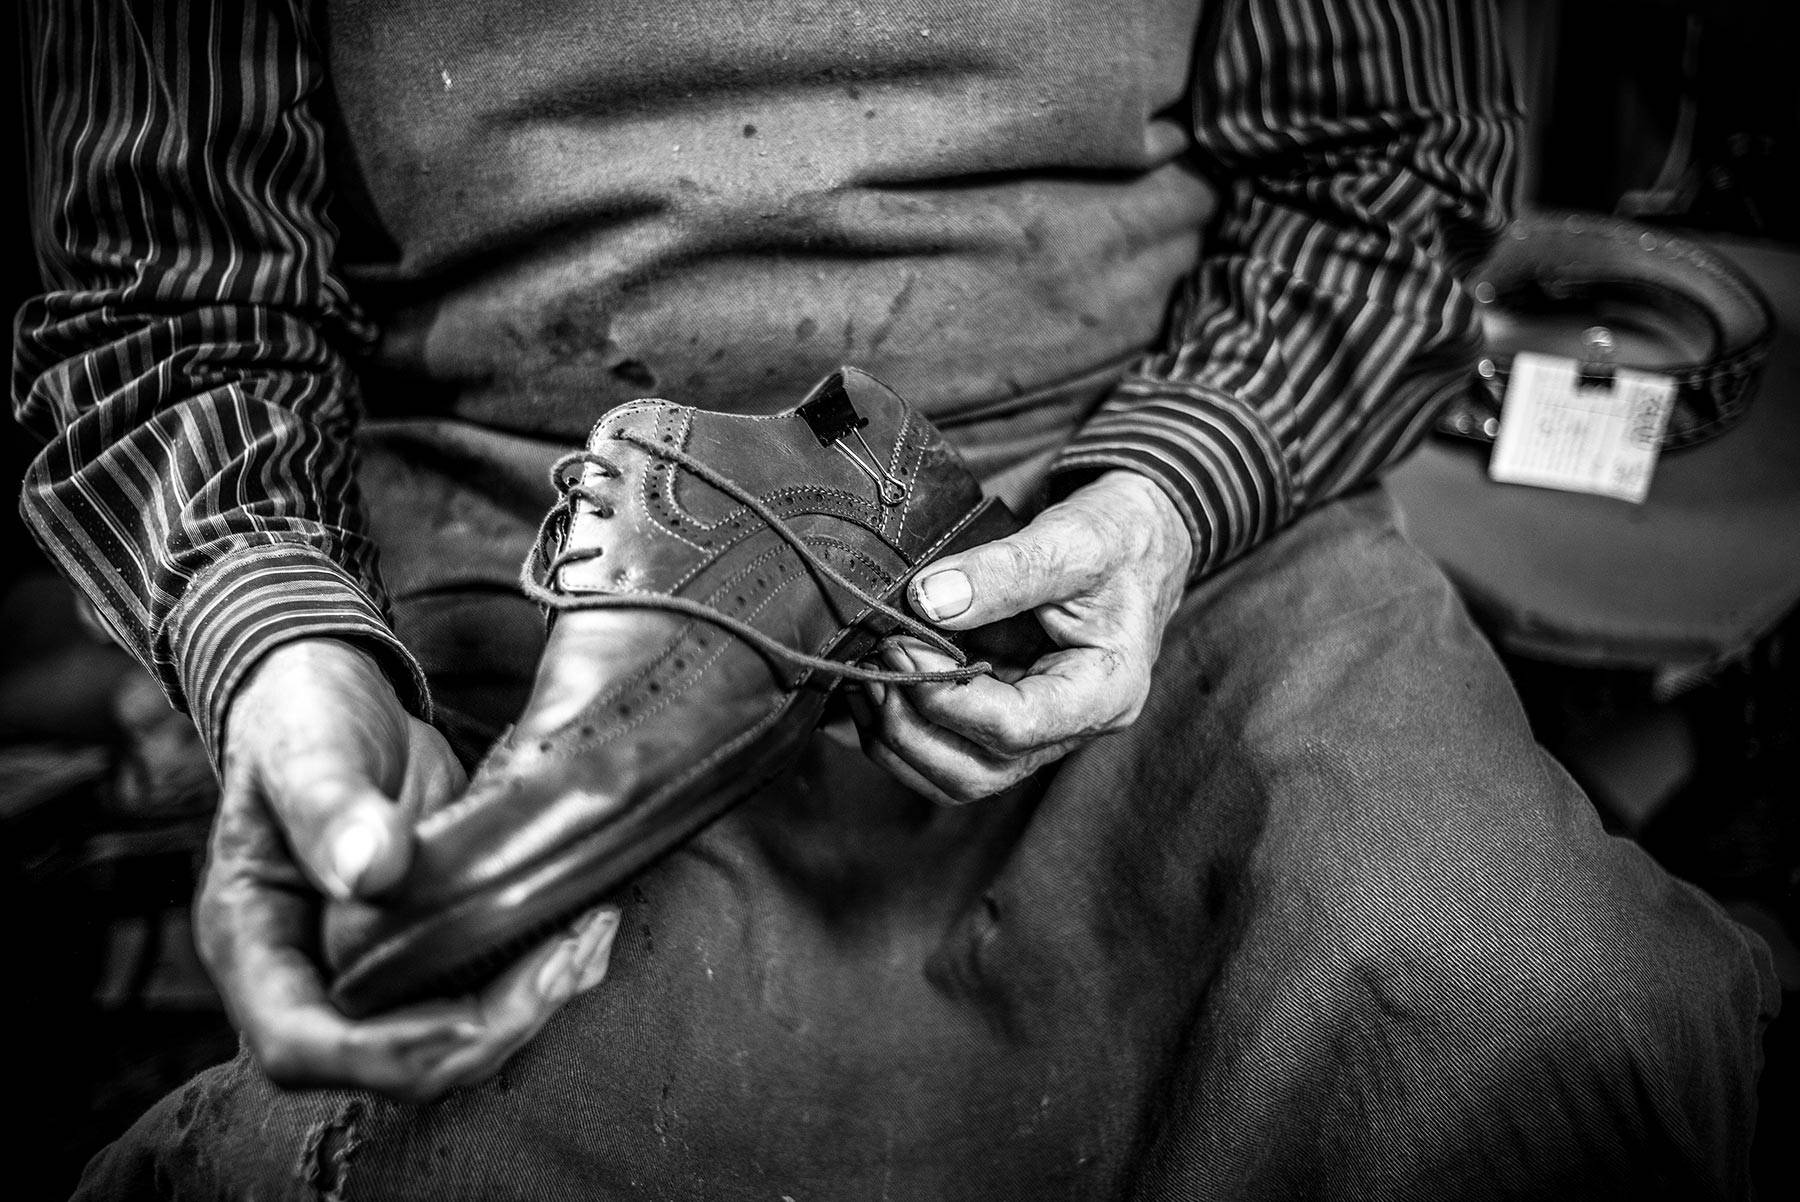 Alte fast ausgestorbene Berufe - der Schuhmacher